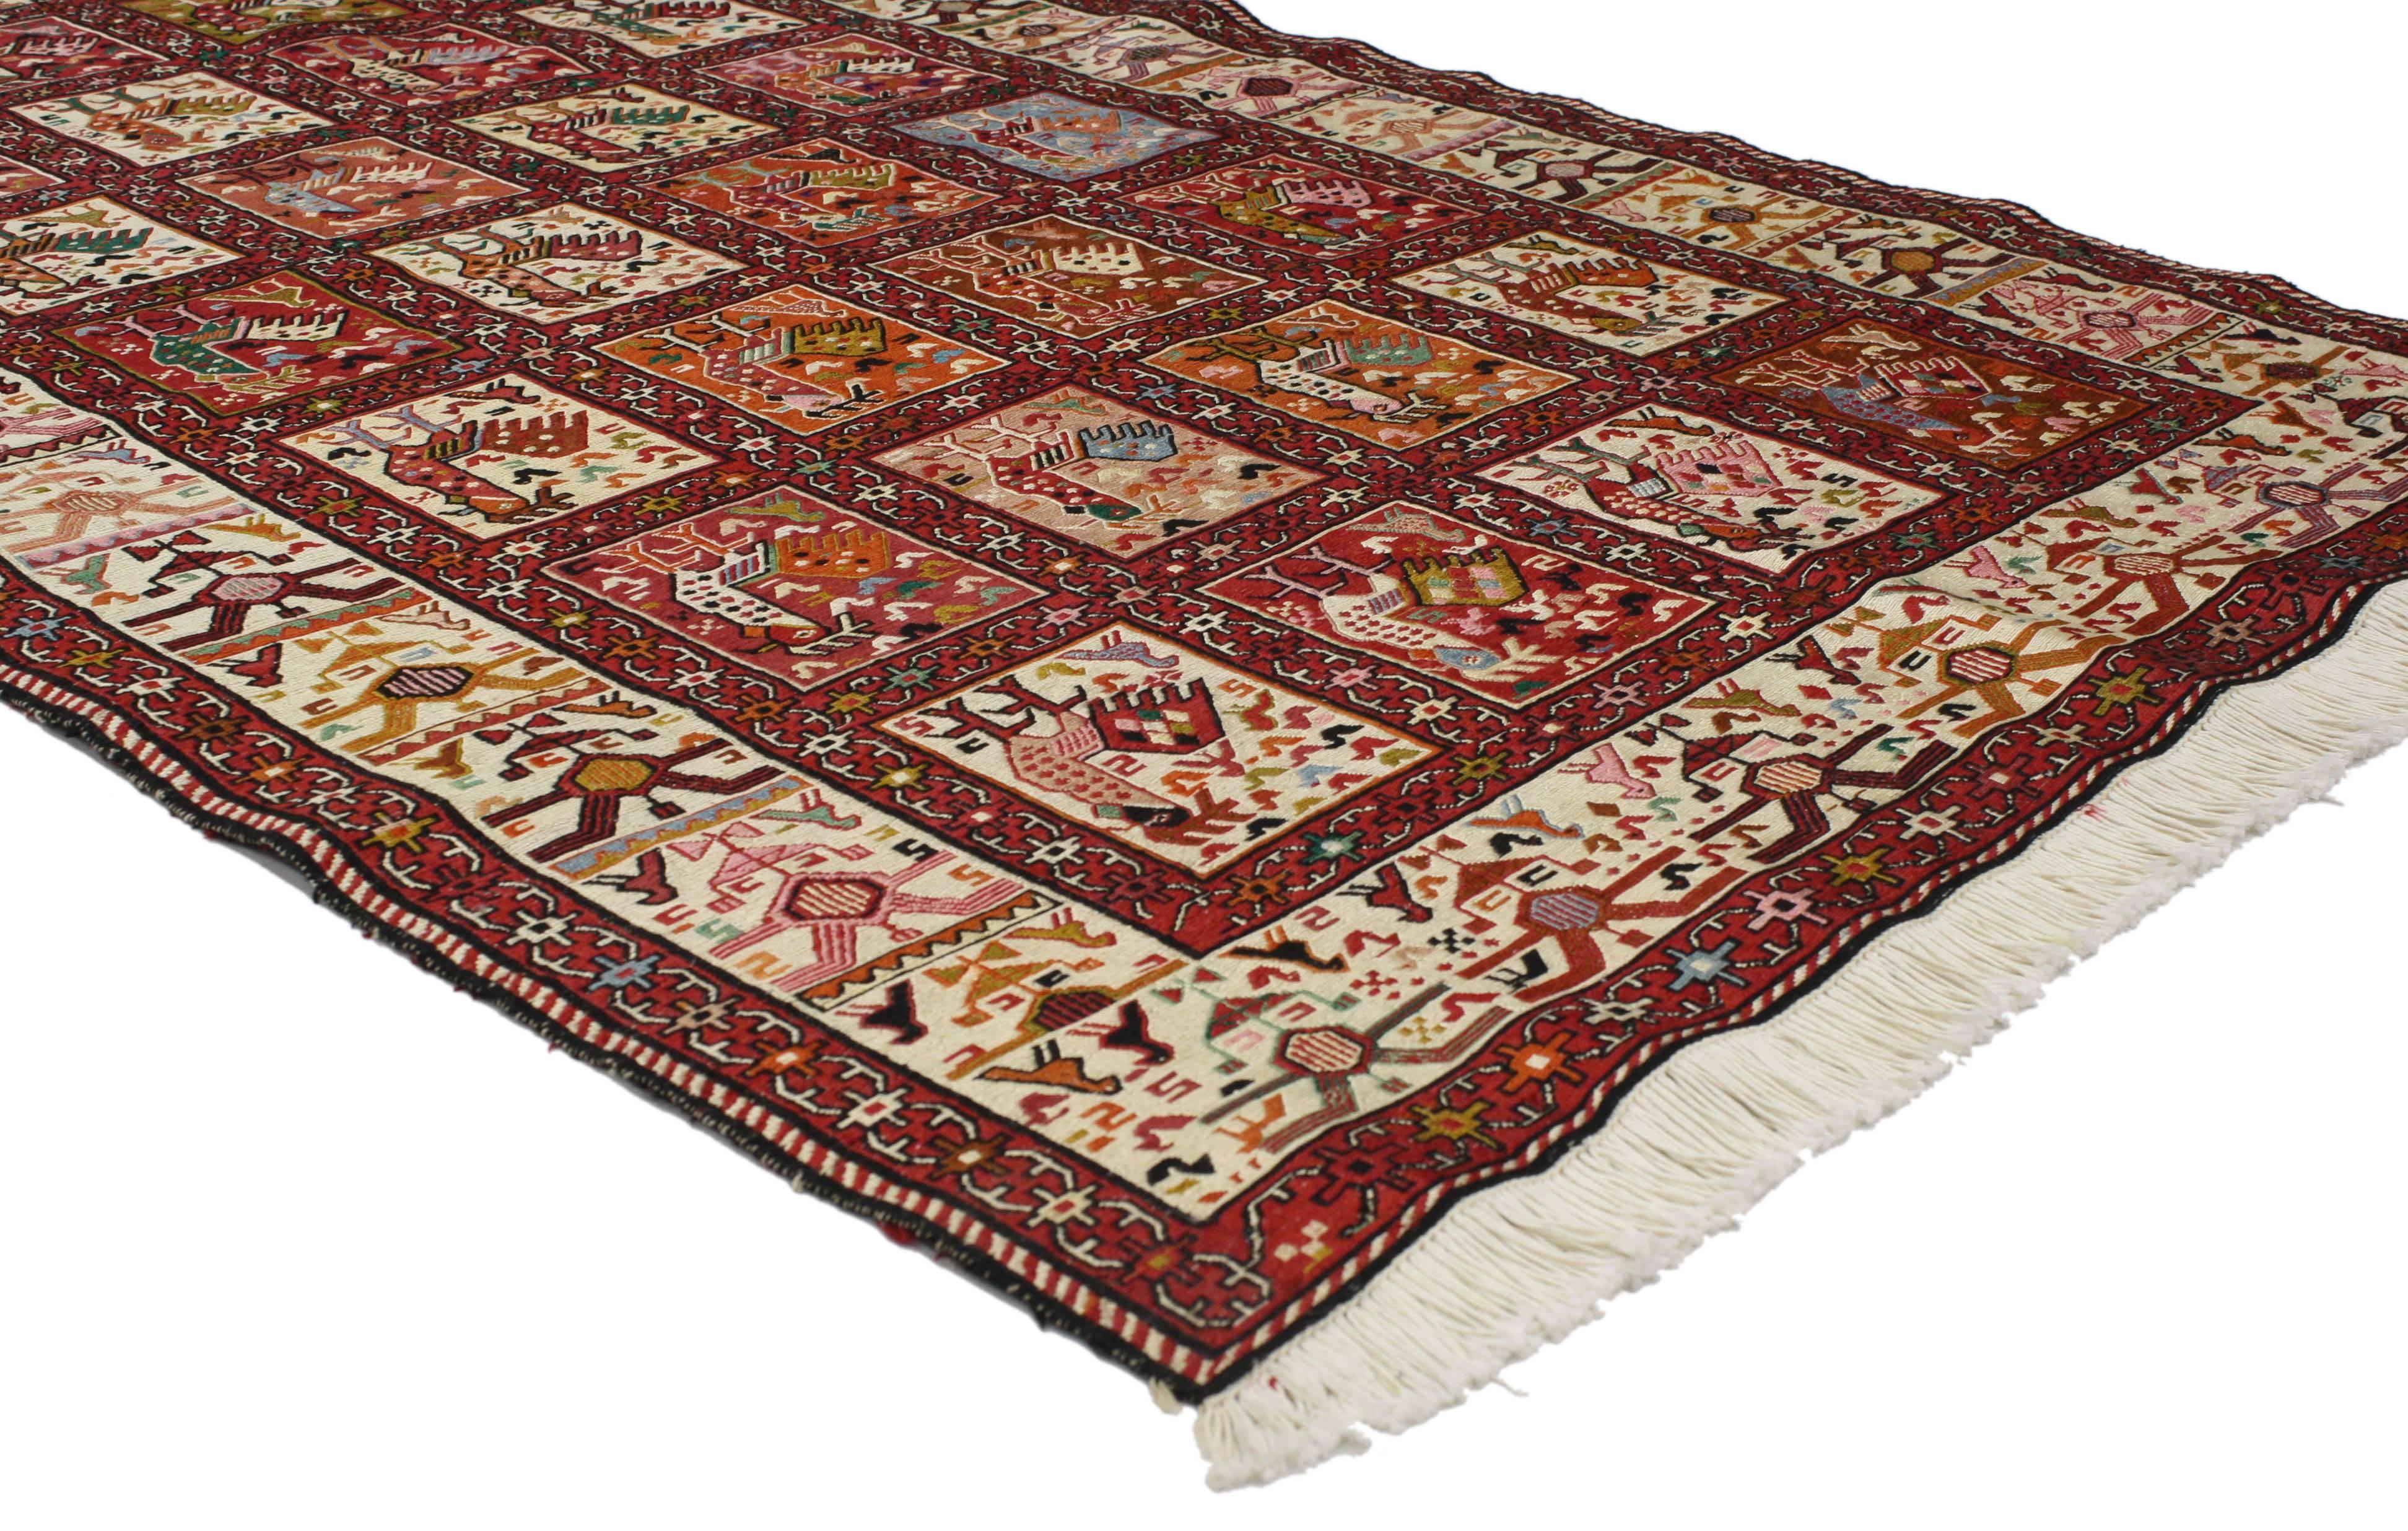 76997 Vintage Persian Soumak Rug, Flachgewebter Hahnenteppich. Mit seinem nomadischen Charme und dem Tribal-Stil ist dieser persische Soumak-Teppich im Vintage-Stil ein auffälliges Einzelstück. Dieser flachgewebte Soumak Rooster-Teppich ist aus